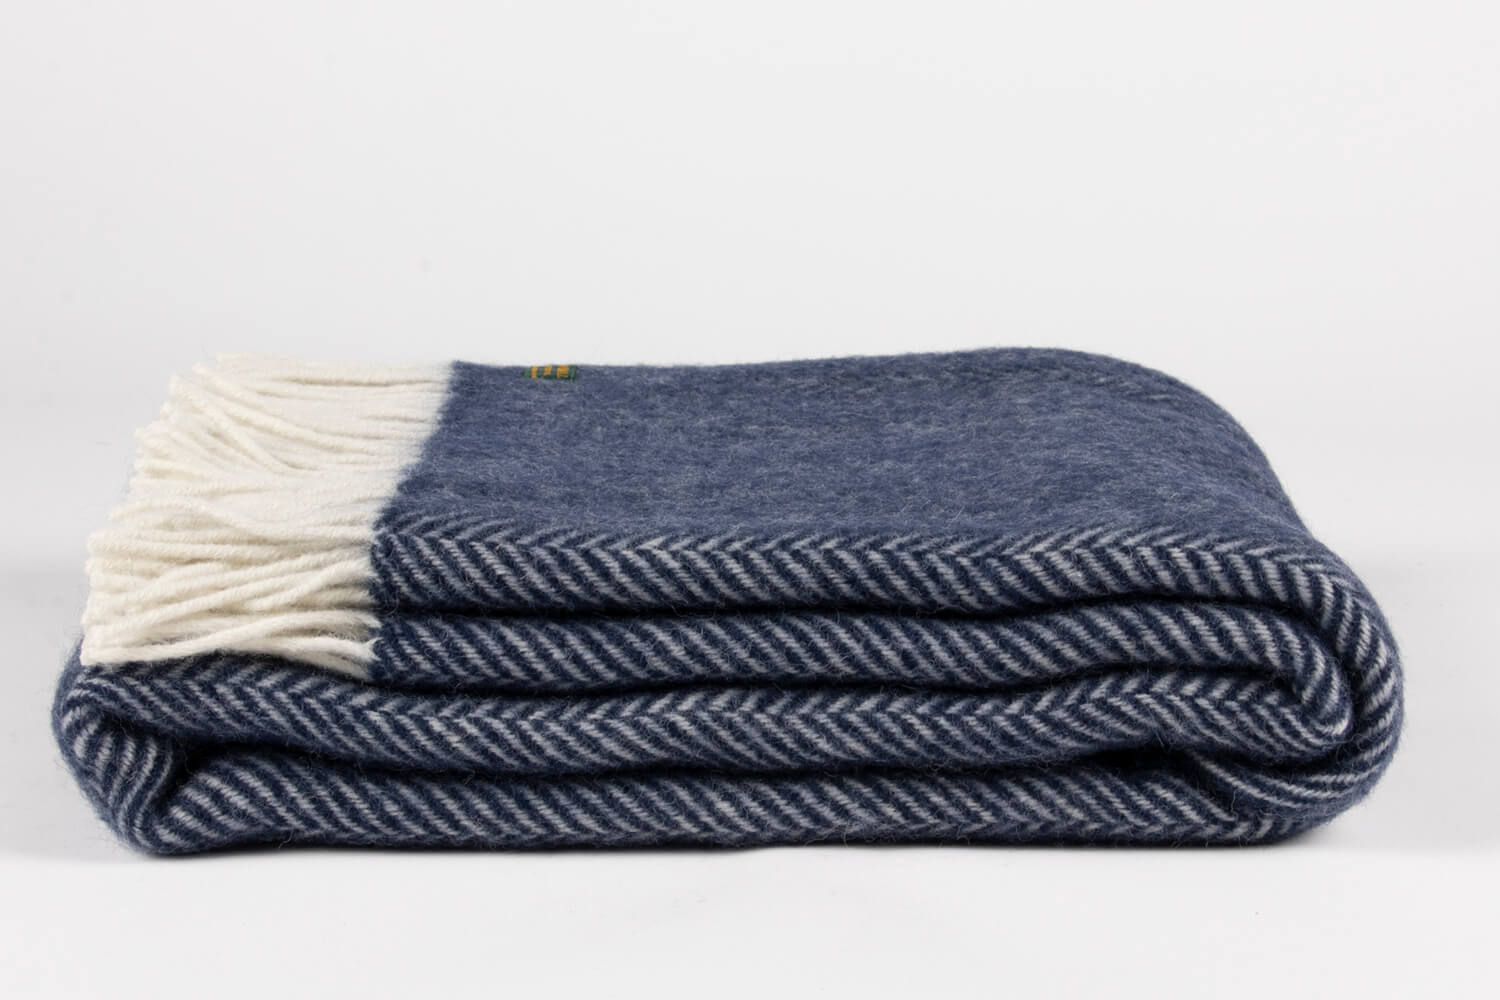 Tweedmill plaid-Visgraat-Donkerblauw-Wit-wollen